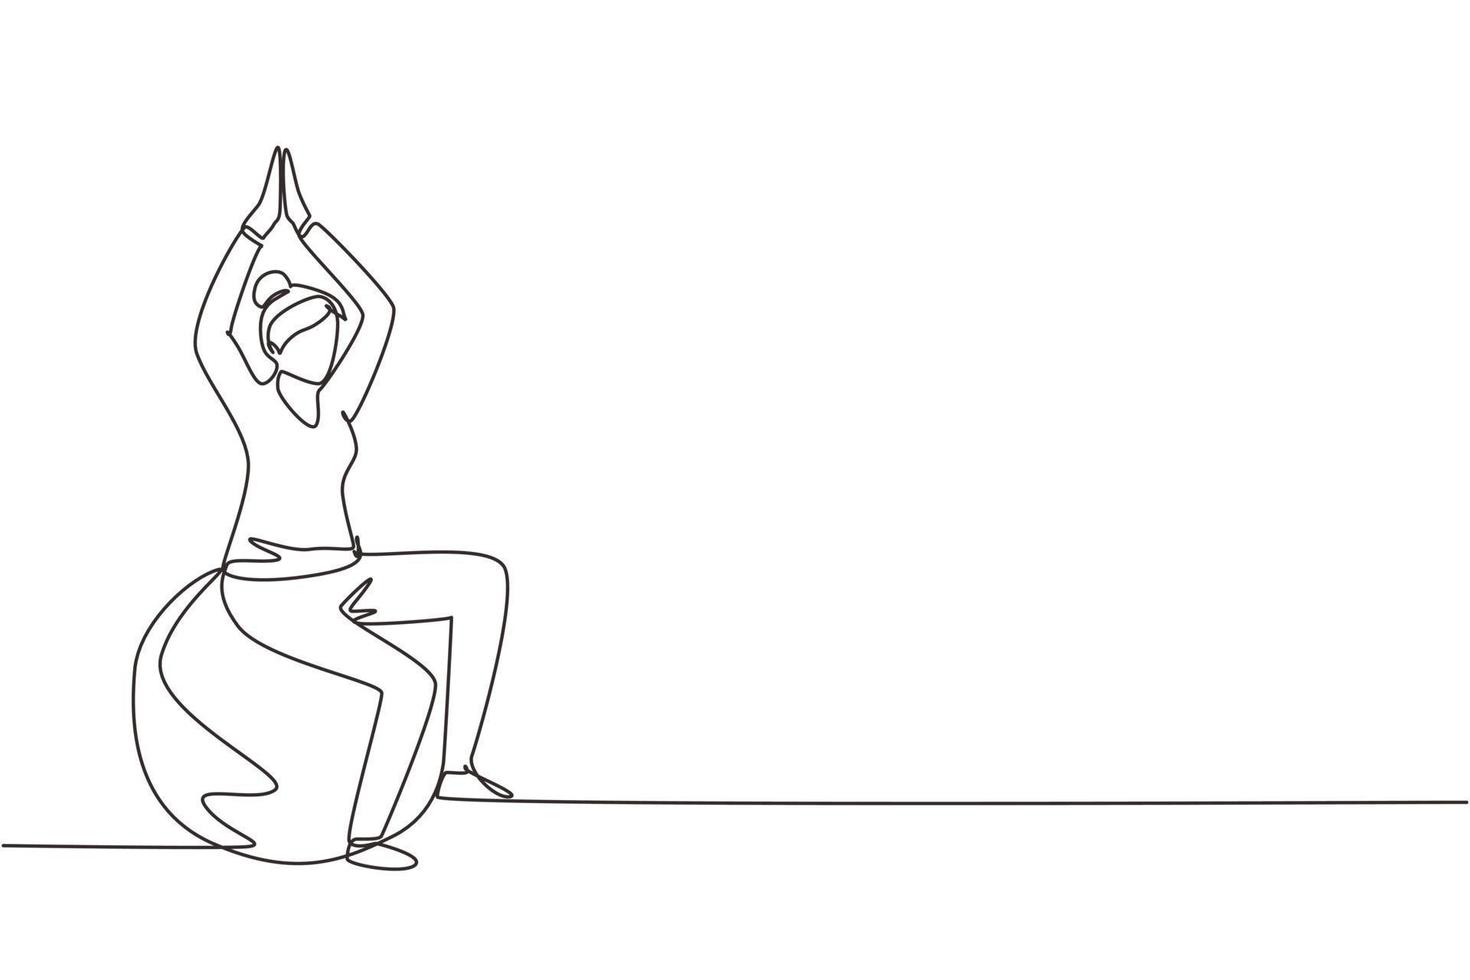 composición isométrica de rehabilitación de fisioterapia de dibujo de una sola línea continua con una paciente sentada encima de una pelota de goma levantando ambas manos. vector de diseño gráfico de dibujo de una línea